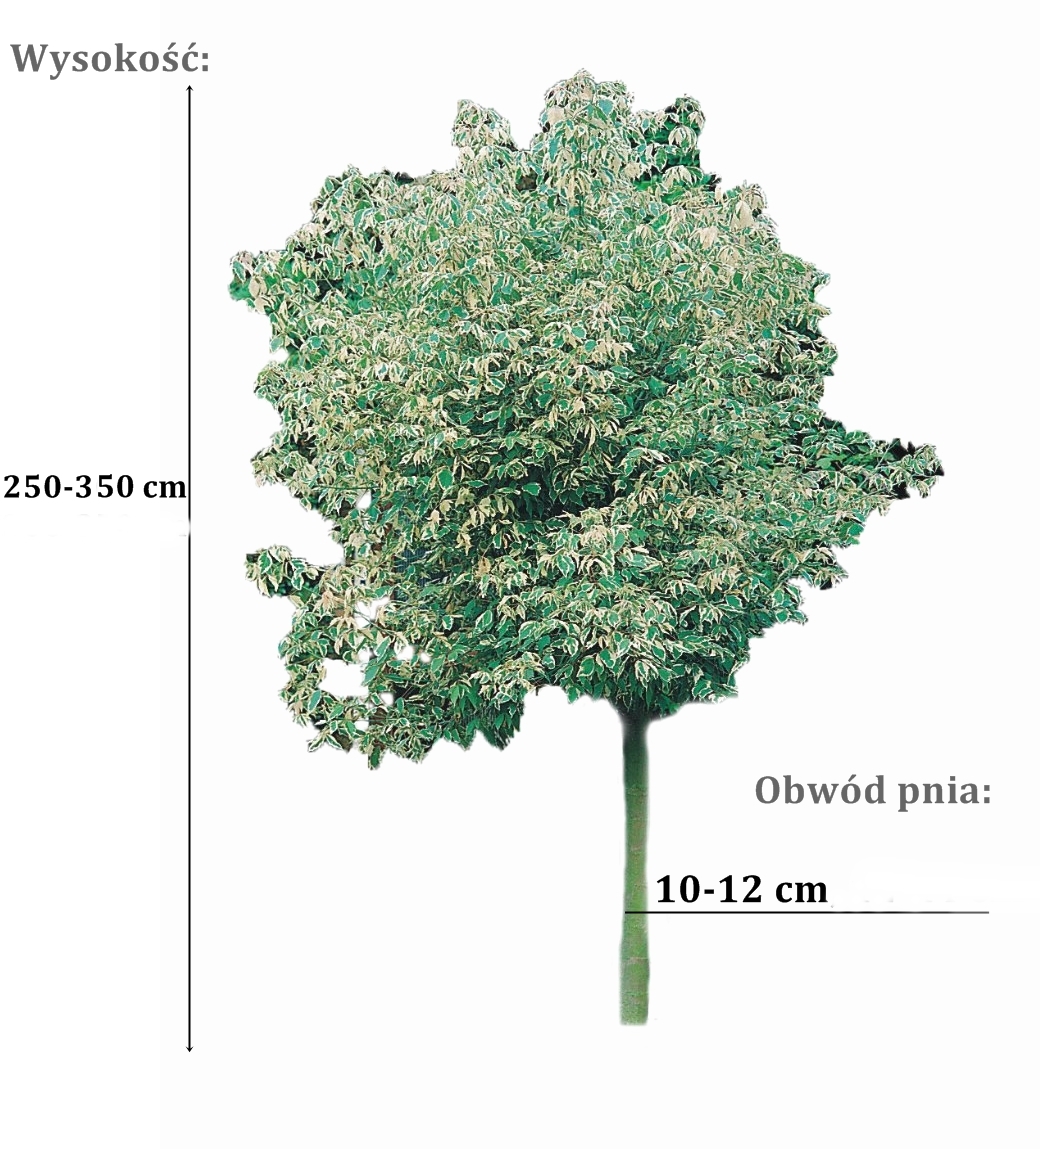 klon variegatum - duze sadzonki drzewa o roznych obwodach pnia